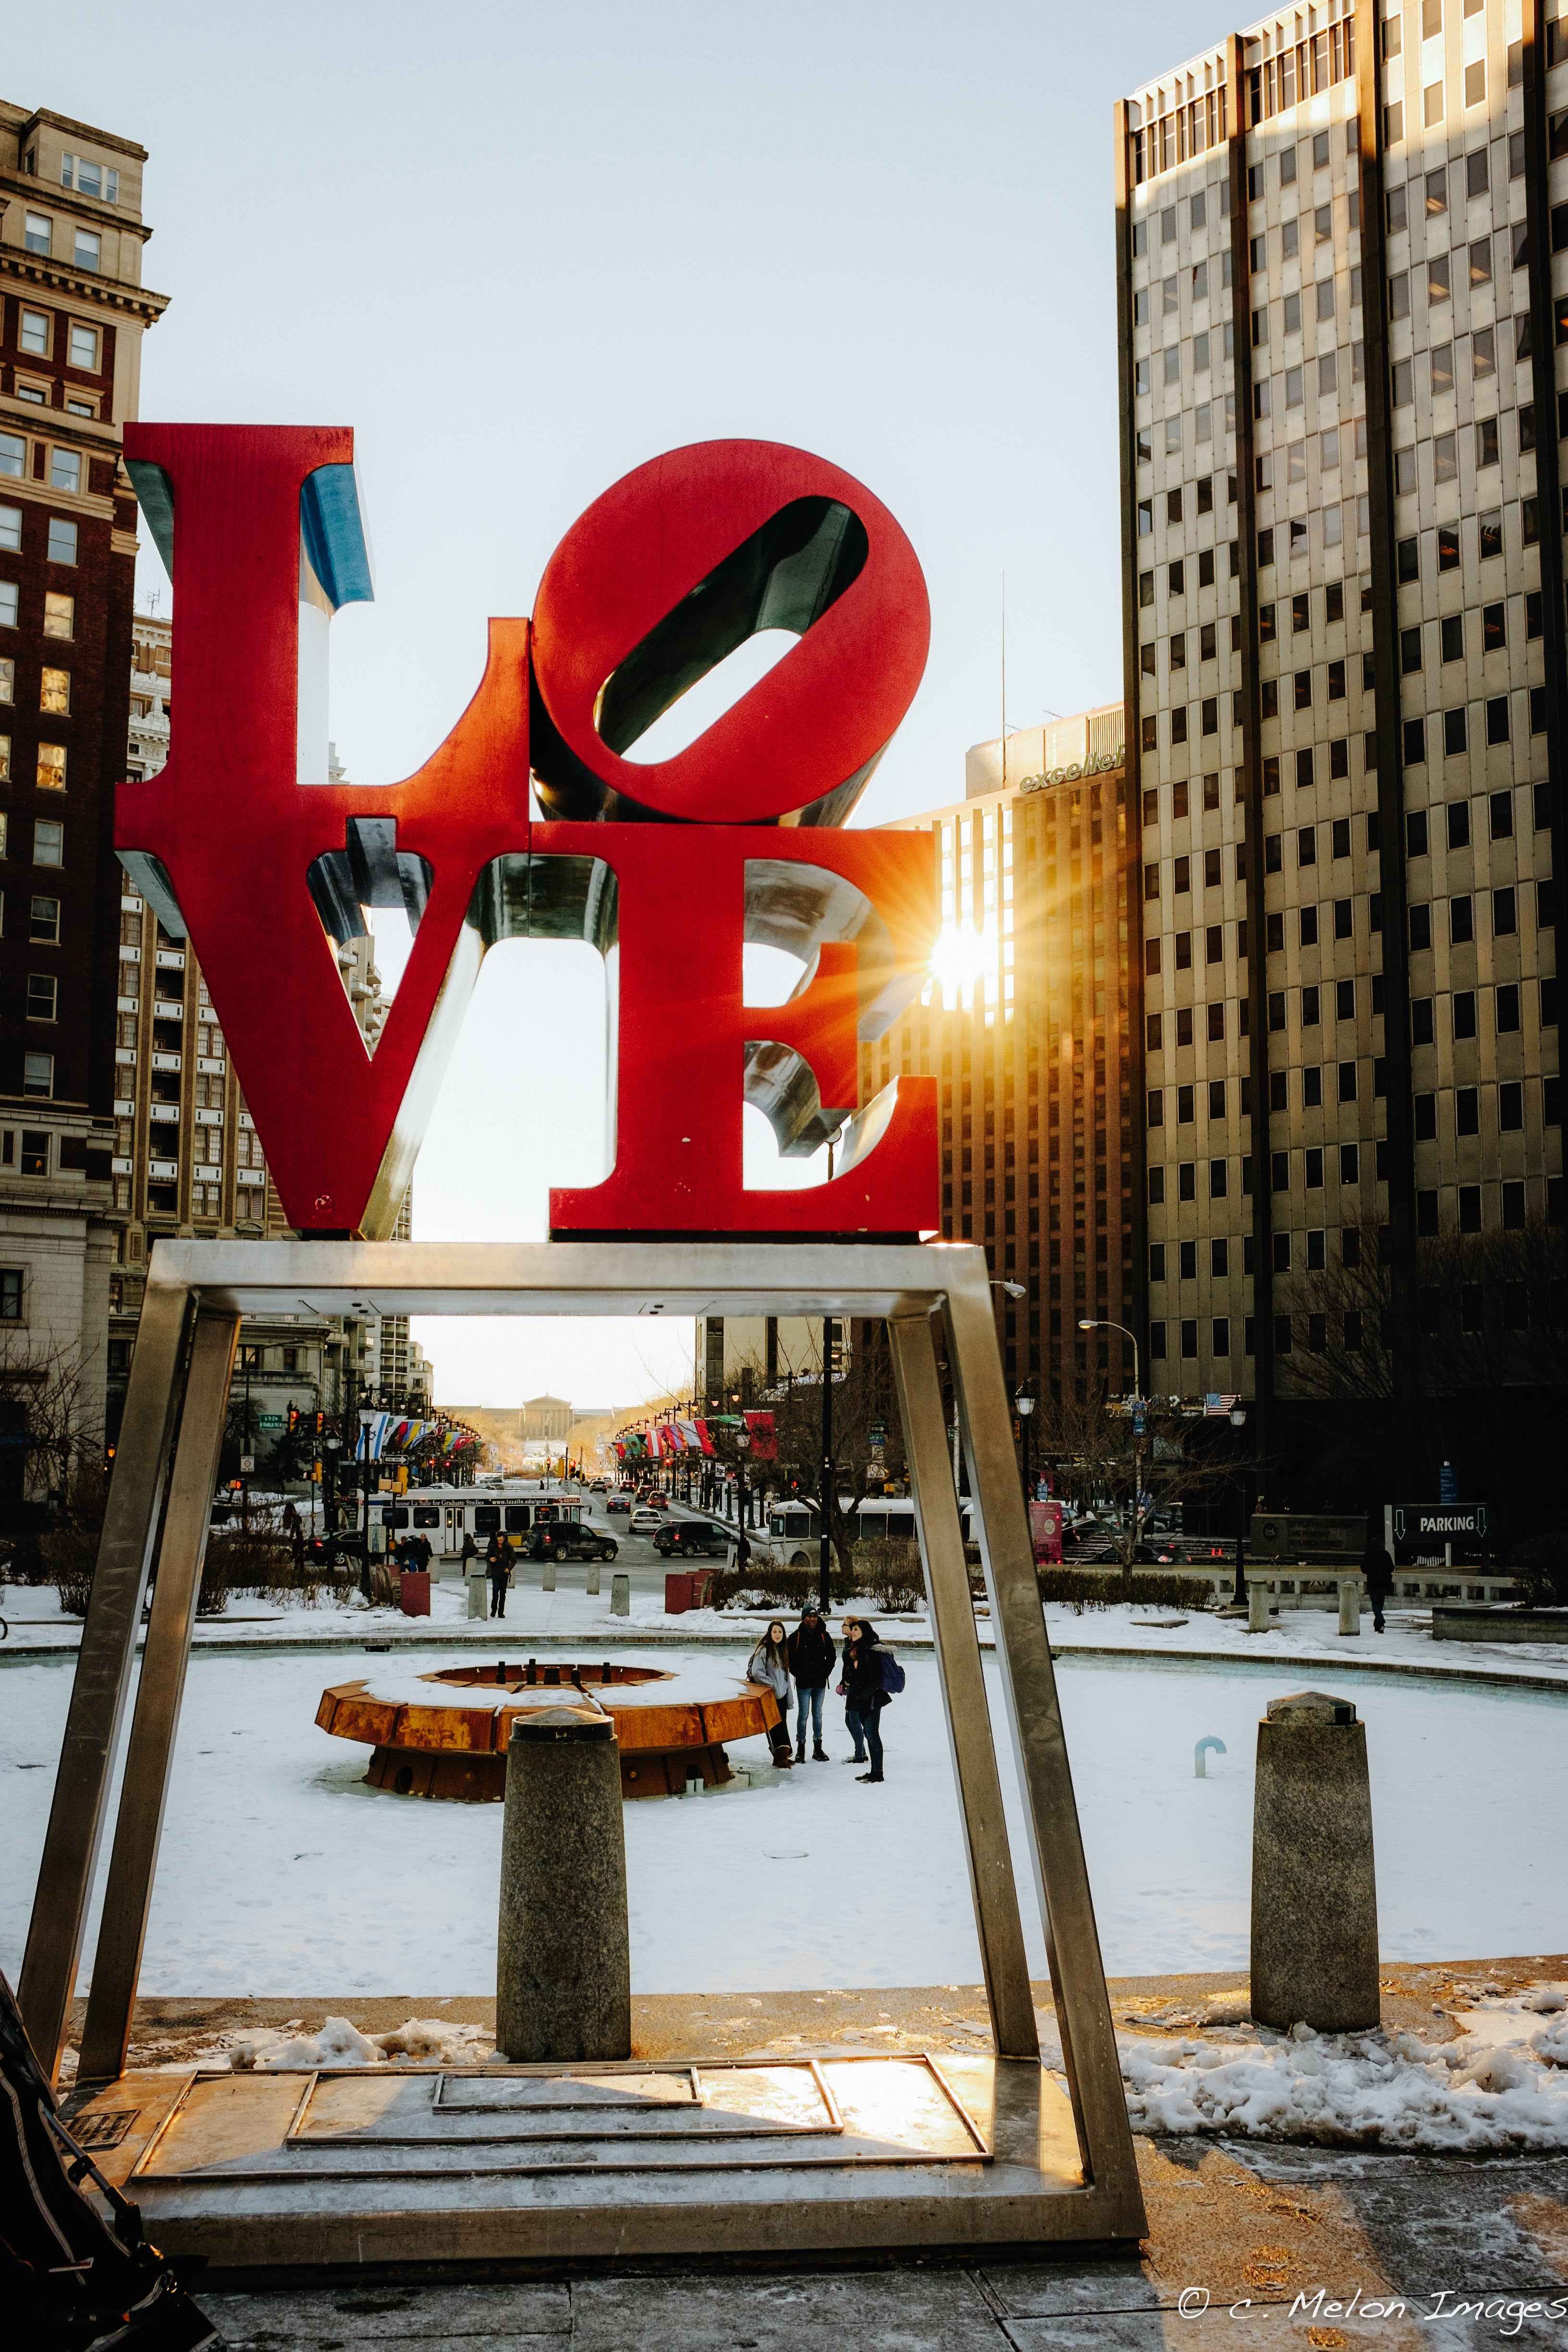 LOVE & Sunshine | Al BeFranke, EOTS Flickr group